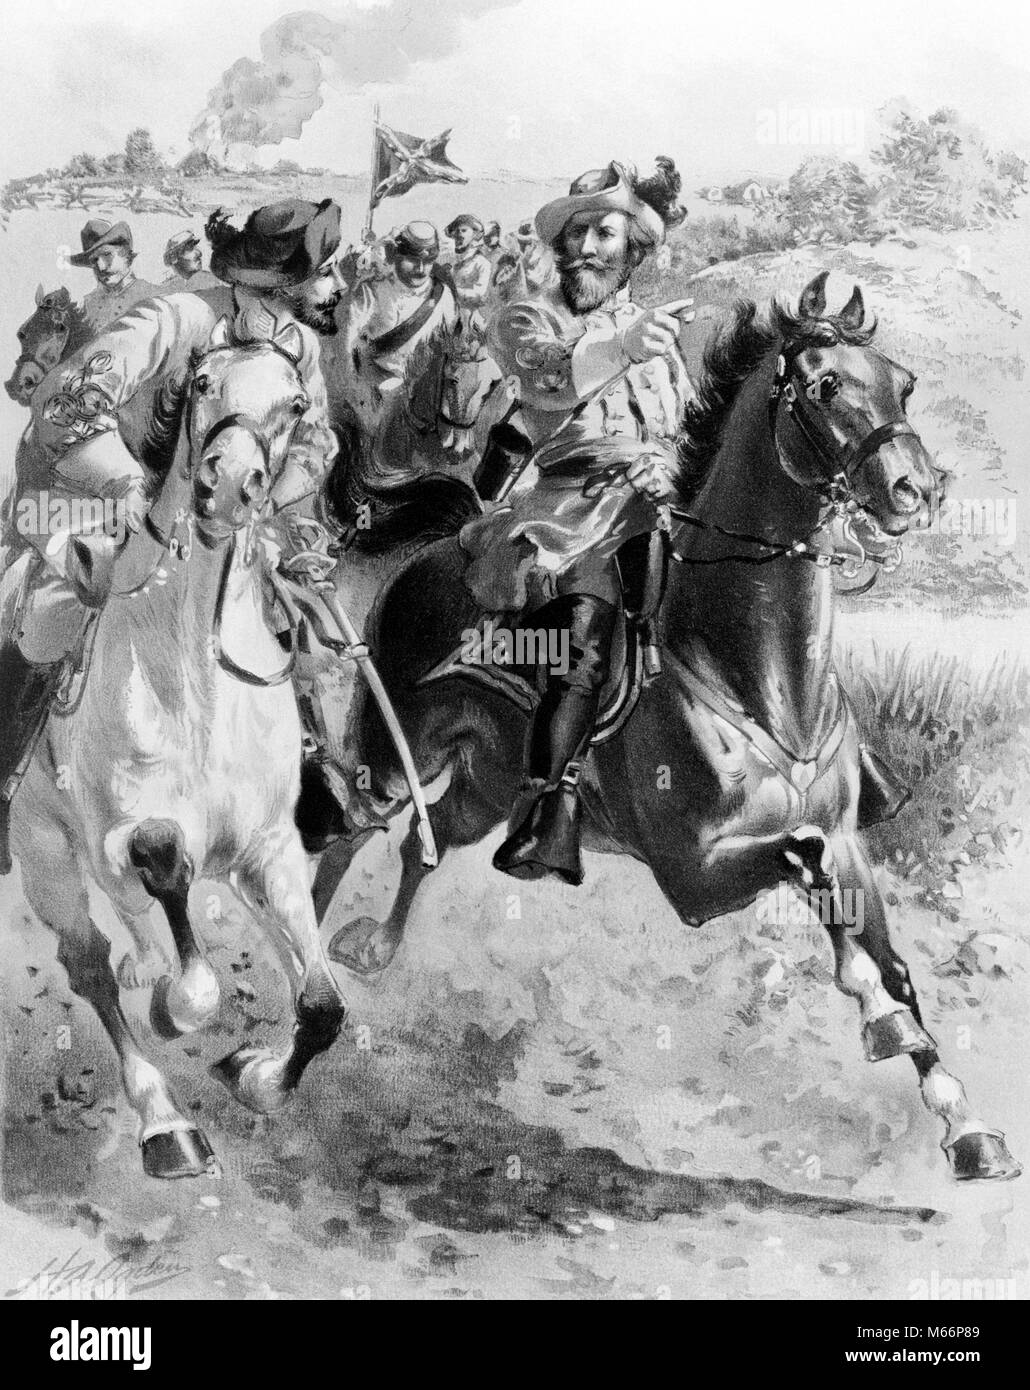 1860 verbündete General JEB J.E.B. STUART Streifzüge um McCLELLAN JUNI 1862 AMERIKANISCHER BÜRGERKRIEG, Kavallerie Pferde - q 61016 CPC 001 HARS SIEG STRATEGIE AUFREGUNG BERÜHMTEN FÜHRUNG mächtig stolz UNIFORMEN EINE PERSON MIT ANDEREN WÜSTE KAMPAGNE ZUSAMMENARBEIT 1860s KLEINE GRUPPE VON TIEREN EQUINE KONFÖDERIERTEN WIDERSPRÜCHLICHE WESEN GESTORBEN JEB MÄNNER SÄUGETIER Mitte - Mitte - erwachsenen Mann junger erwachsener Mann 1862 AMERIKANISCHER BÜRGERKRIEG, B&W Schlachten kämpfen SCHWARZ UND WEISS KAUKASISCHEN ETHNIE KAVALLERIE BÜRGERKRIEG KONFLIKTE BERÜHMTE PERSON JUNI MCCLELLAN PERSONEN ÜBERFALLEN STUART Stockfoto